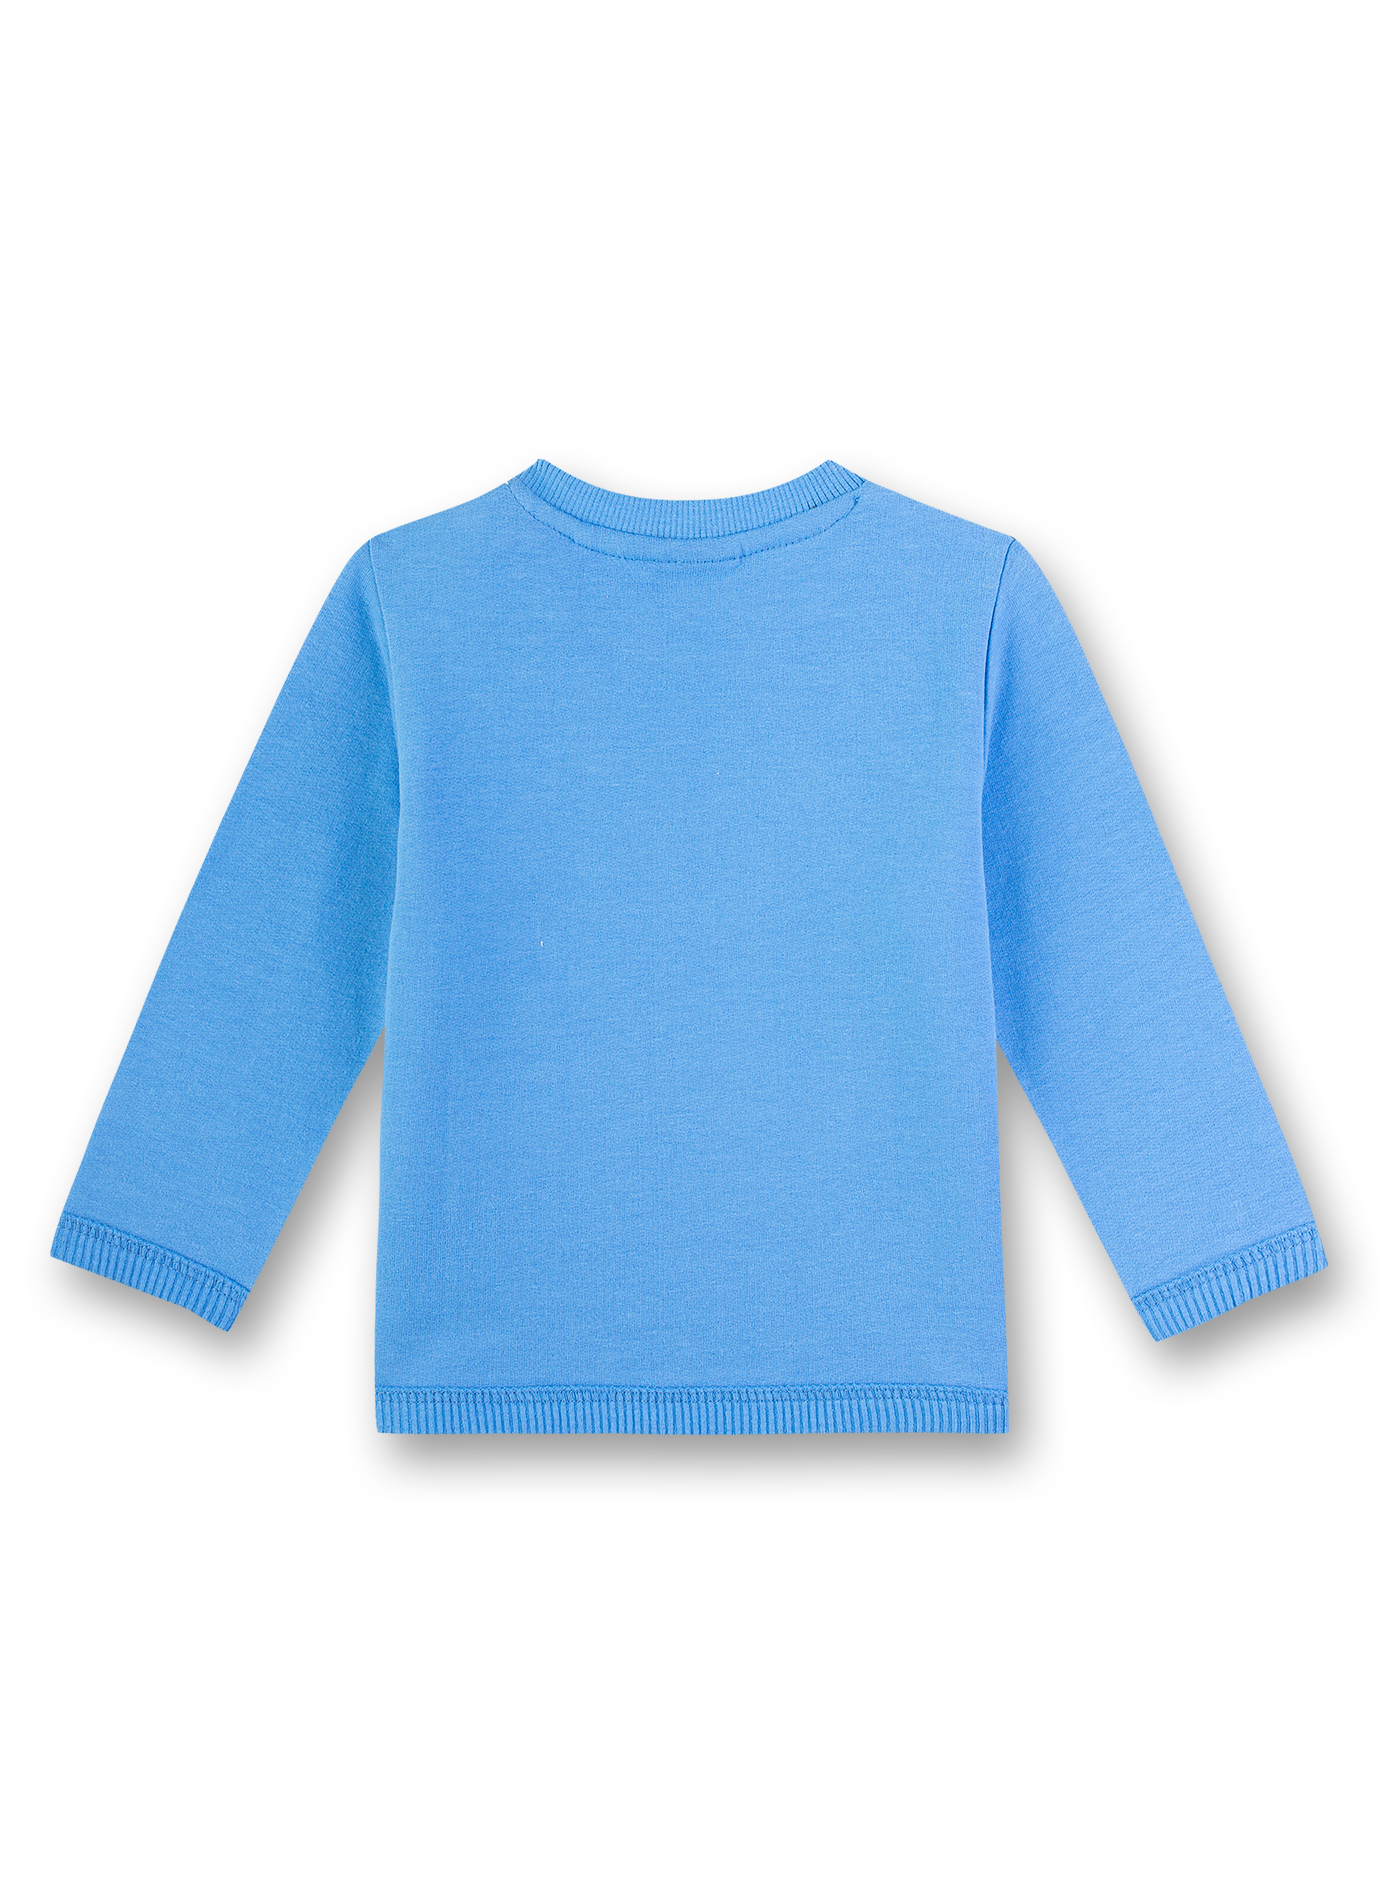 Jungen-Sweatshirt Blau Submarine